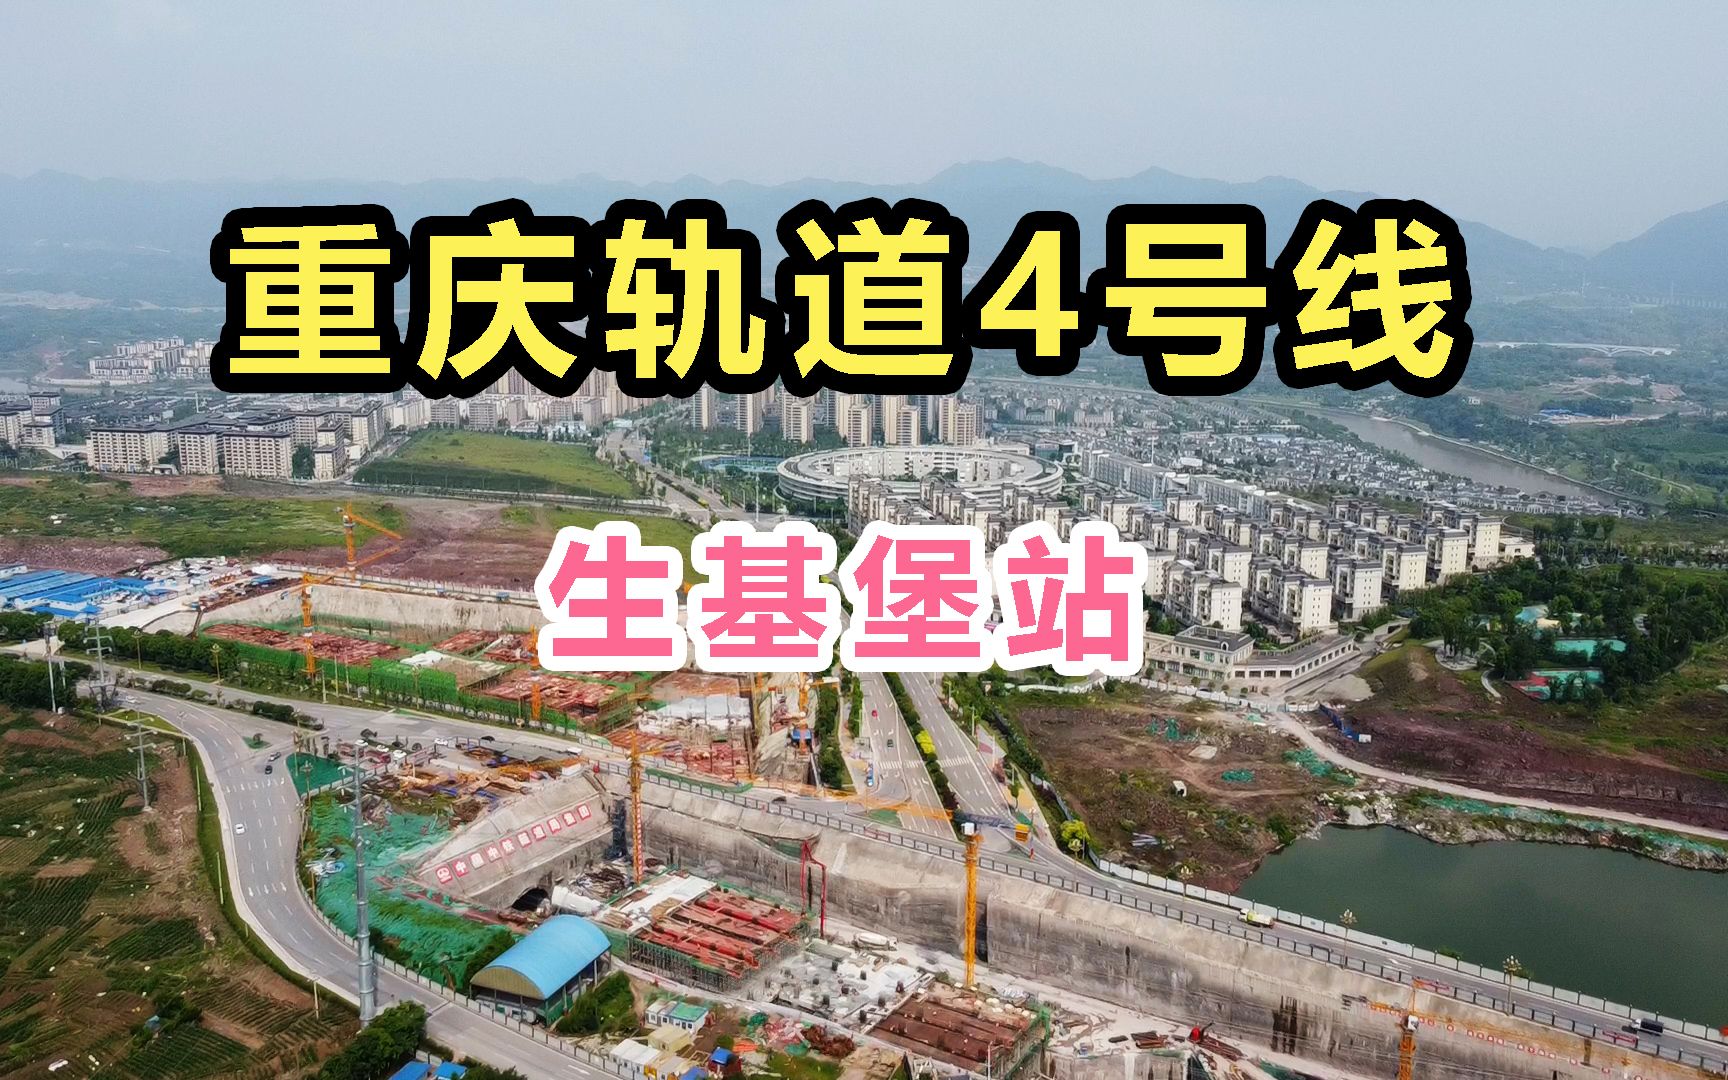 重庆轨道4号线二期的核心位置,生基堡站!也是和8号线的换乘站